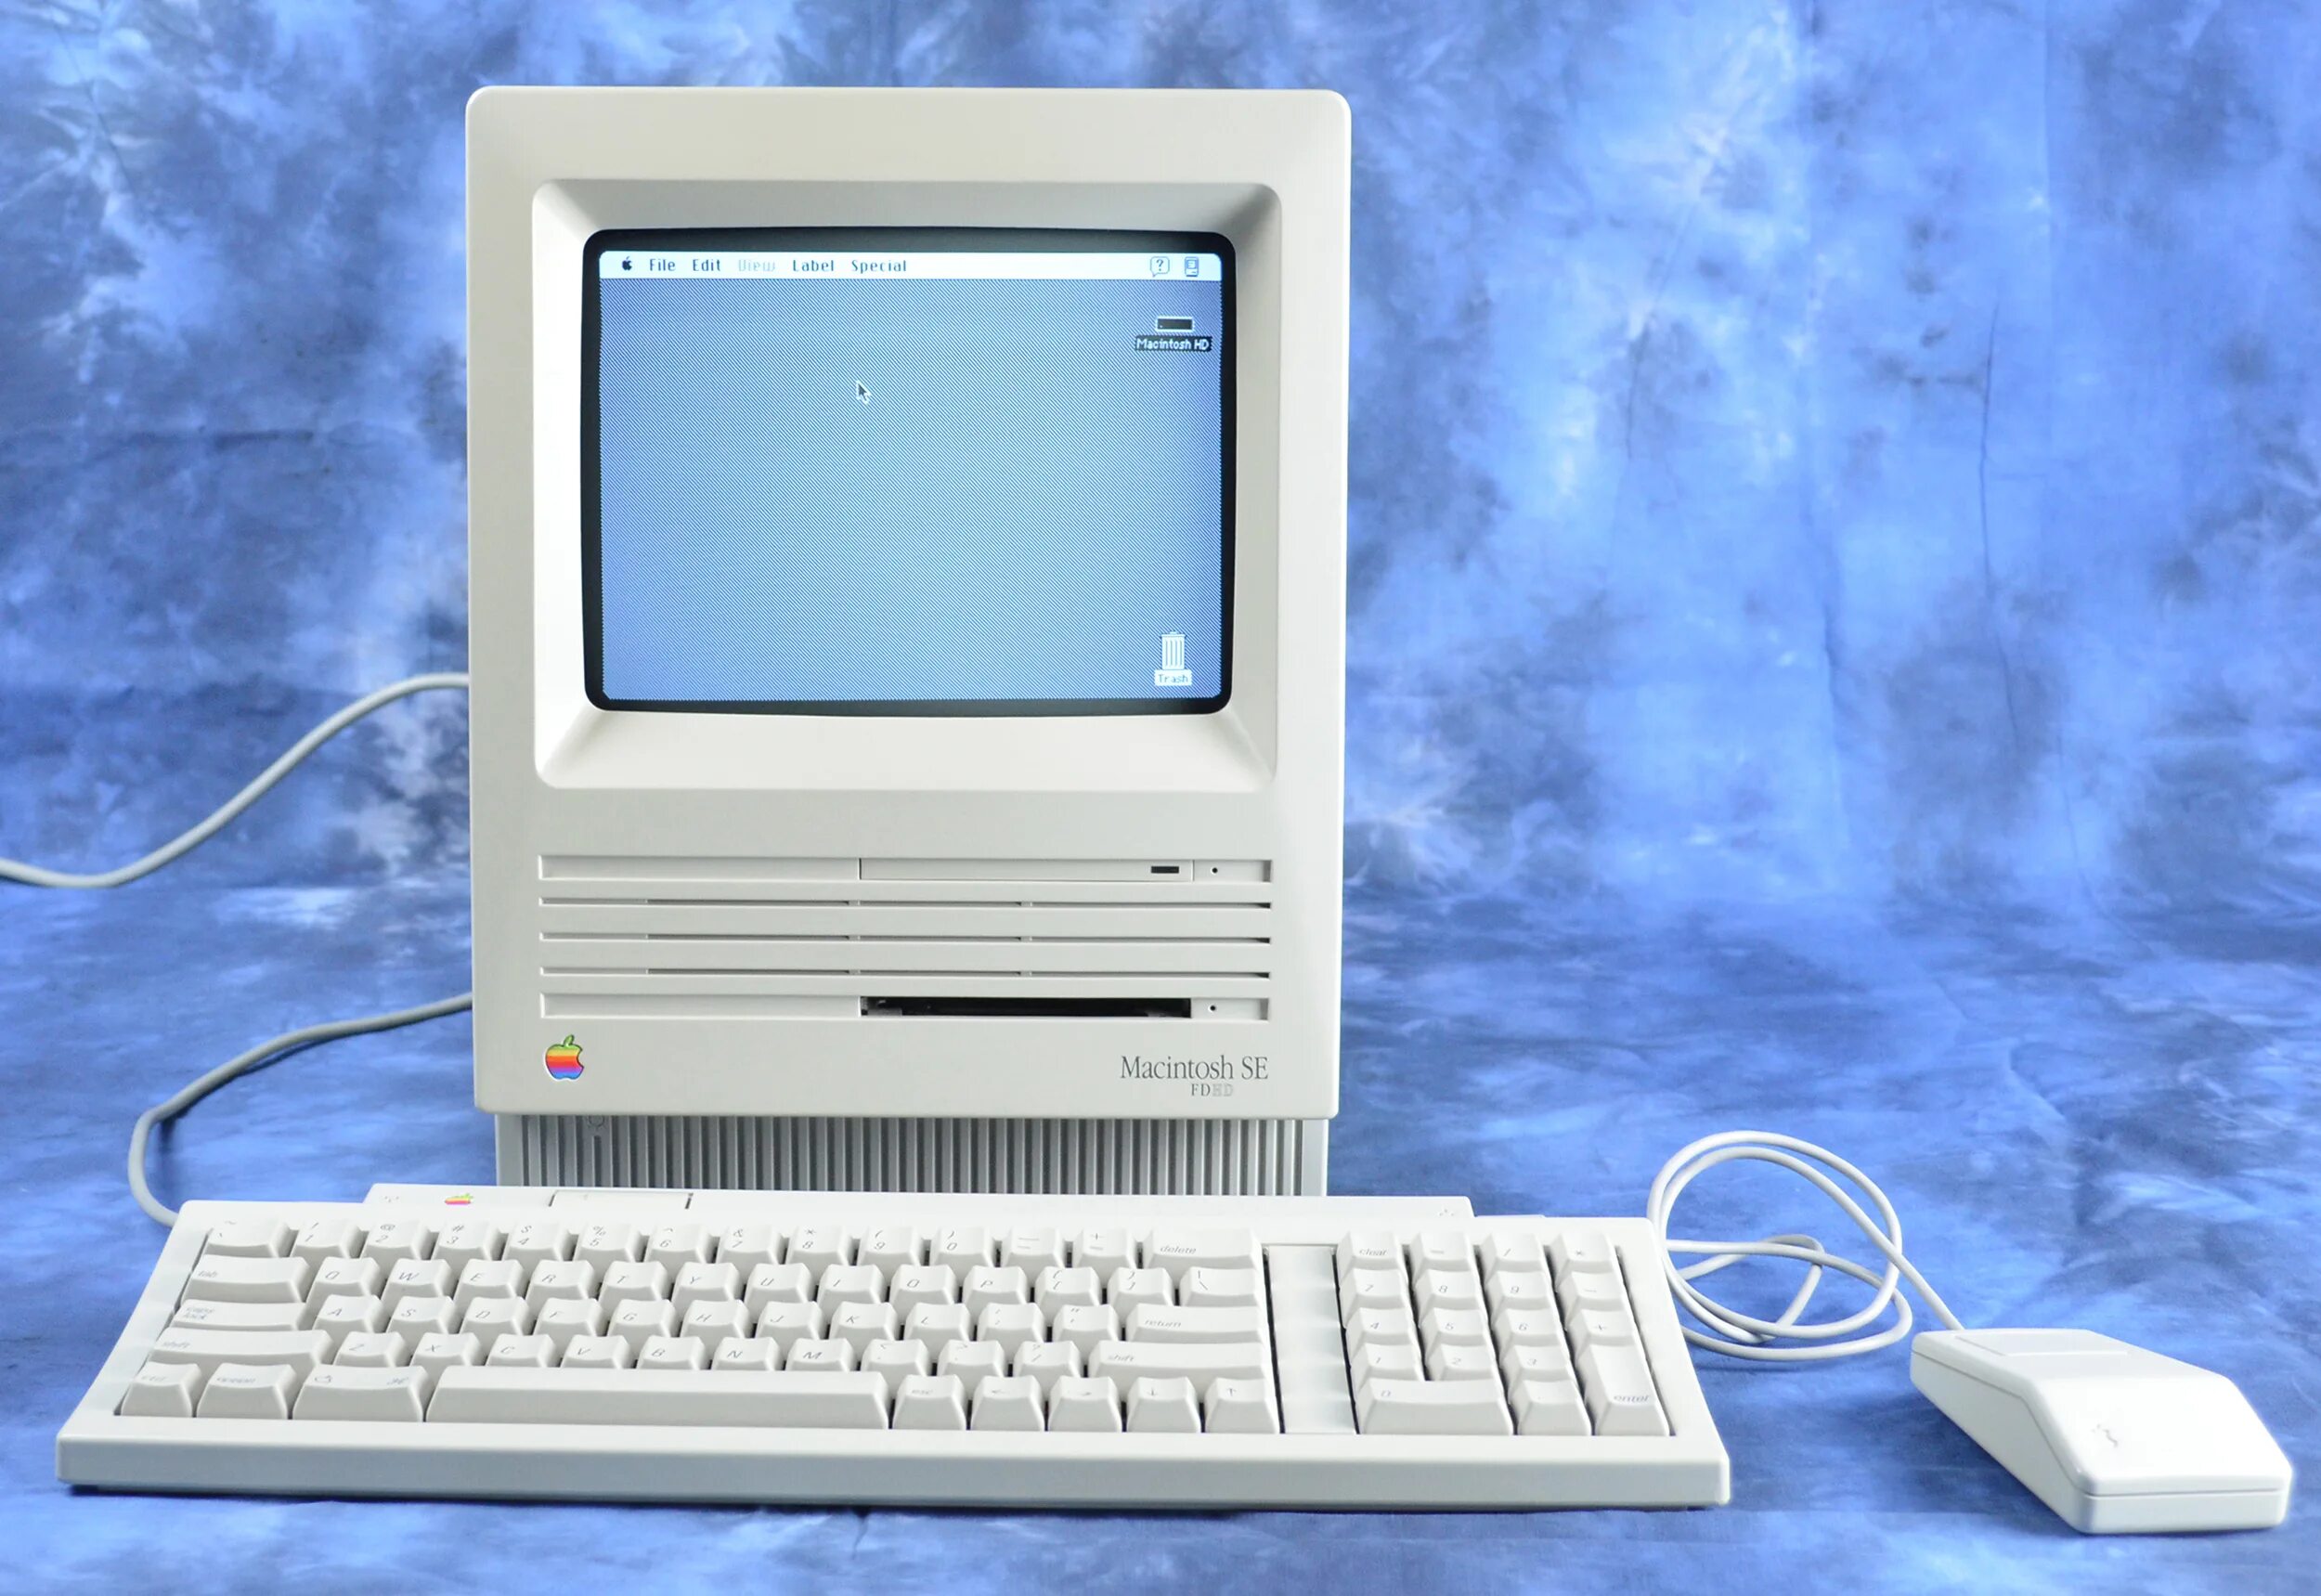 1 личный компьютер. Компьютер Apple Macintosh (1984). Компьютер макинтош 1984. Эппл макинтош 1984. Первые компьютеры Эппл макинтош.